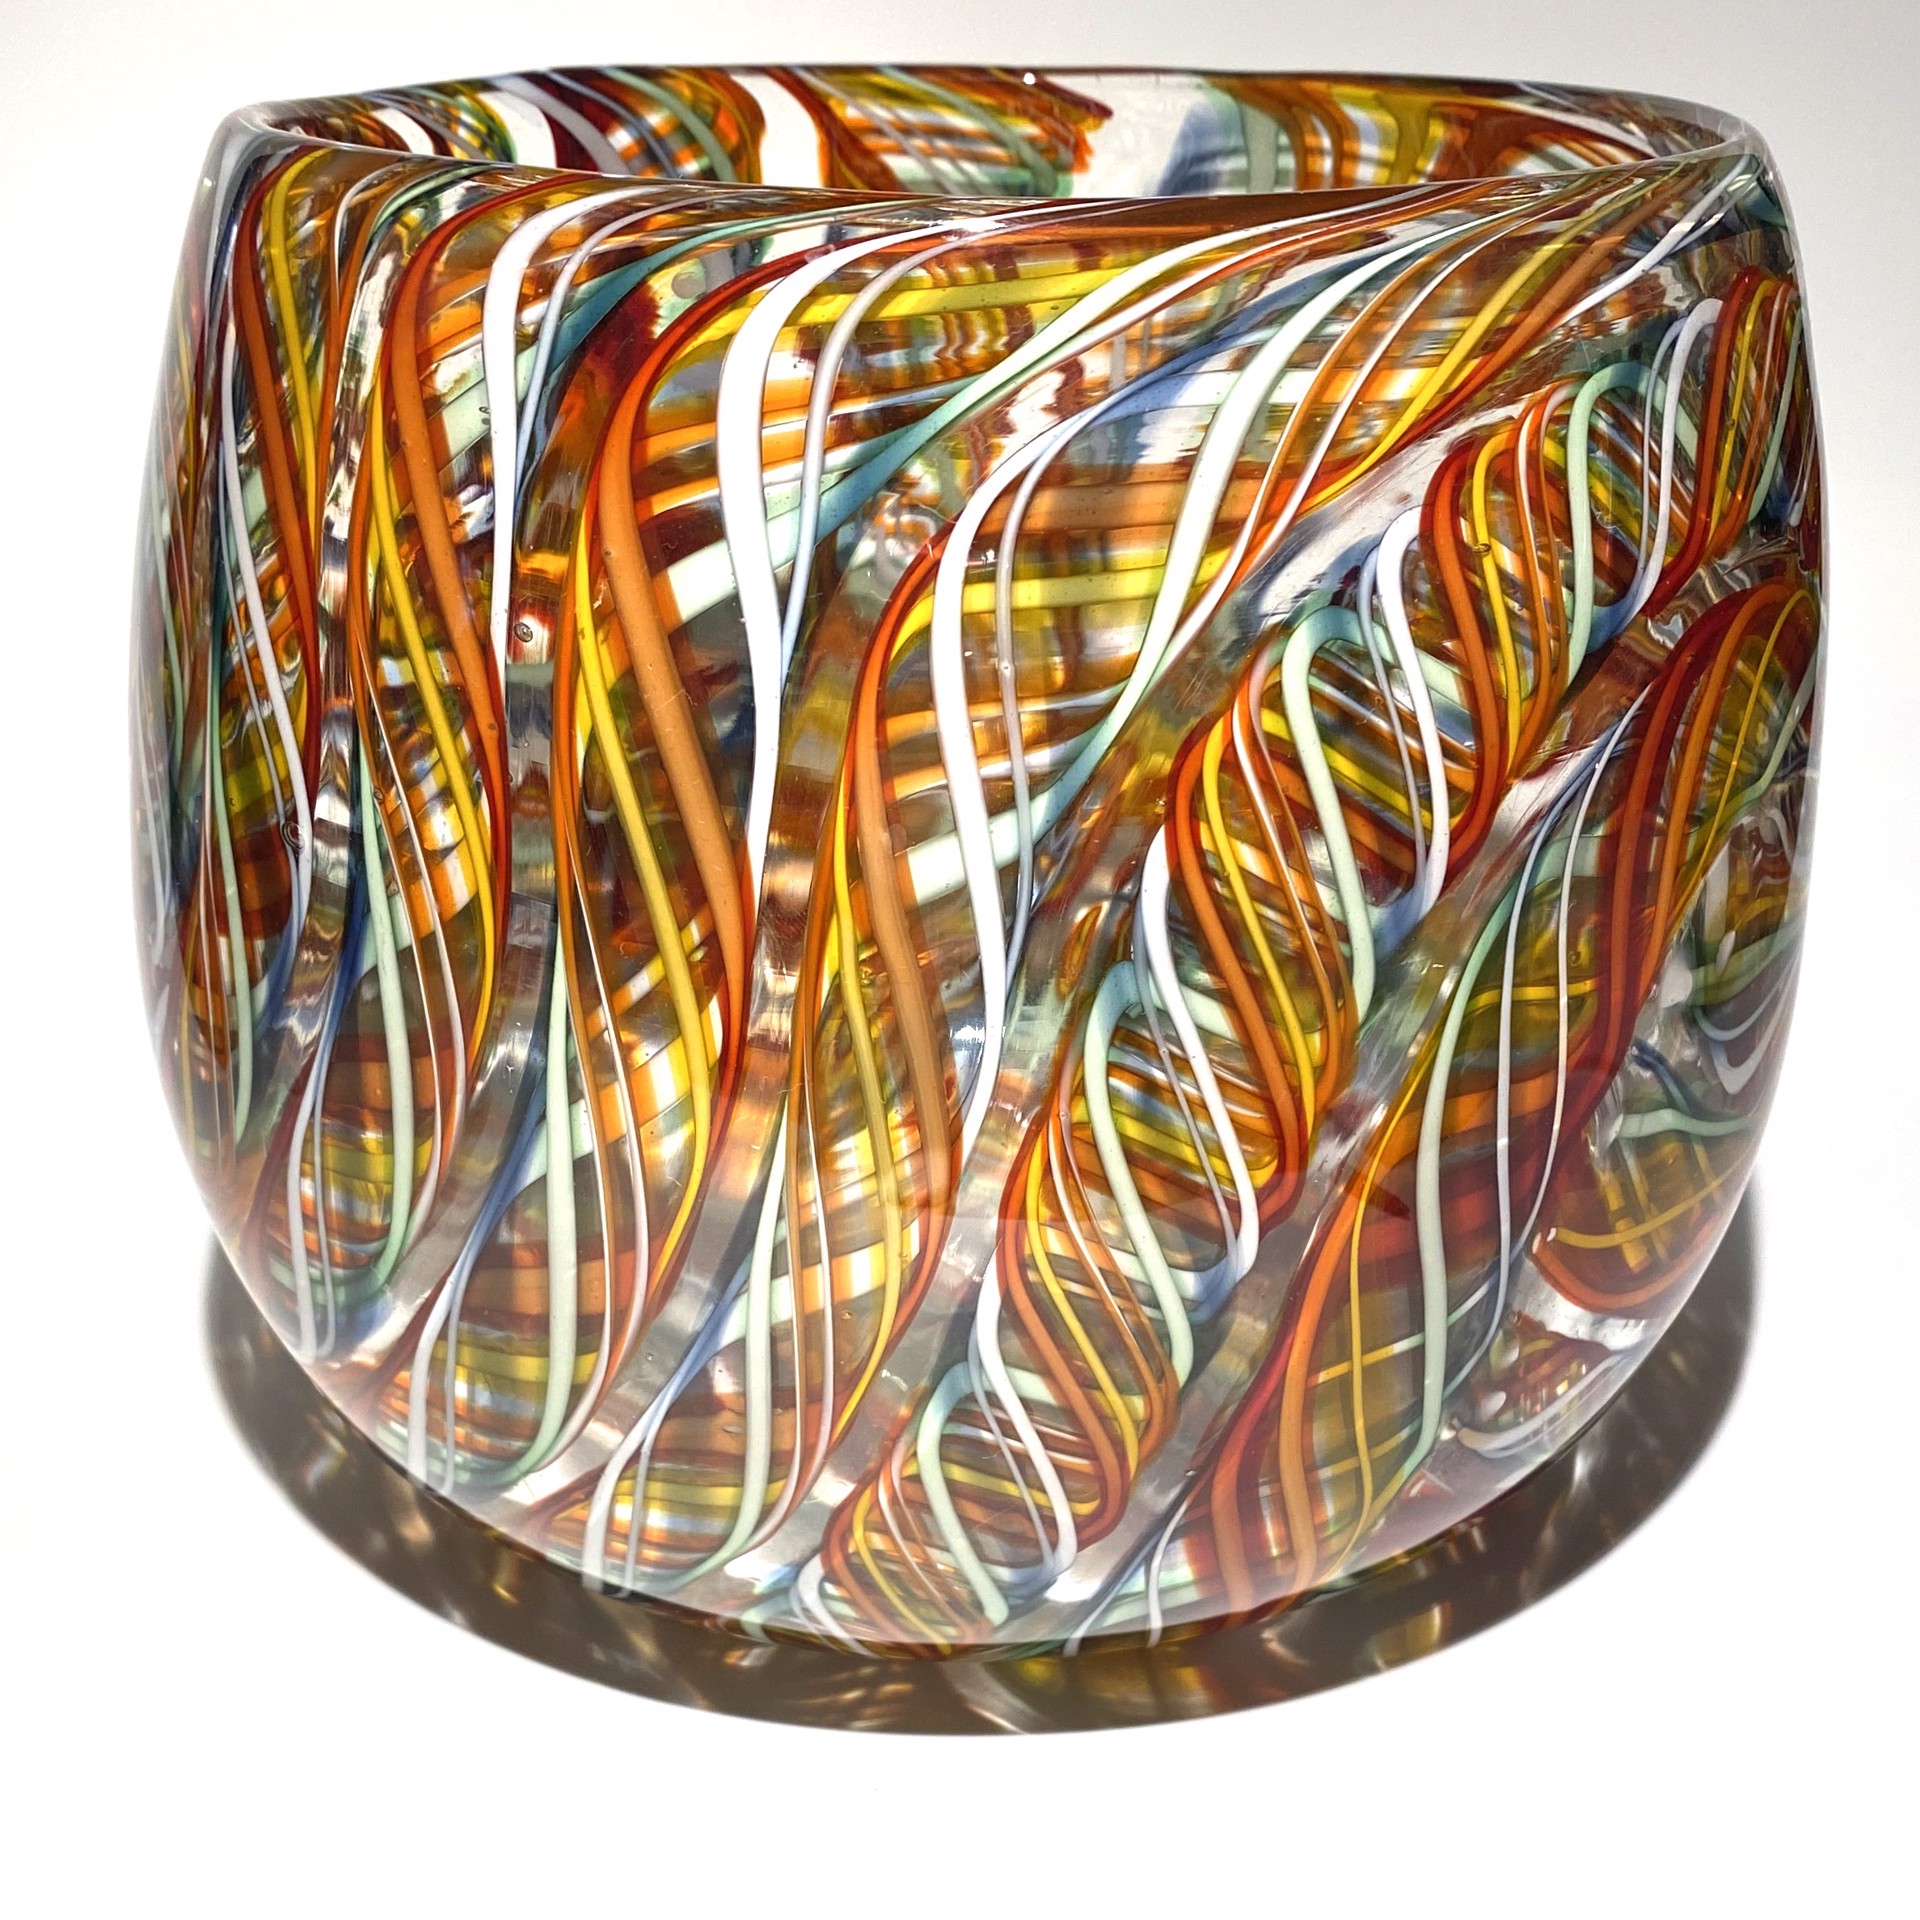 Vessel-Candy Stripe JG6 by John Glass